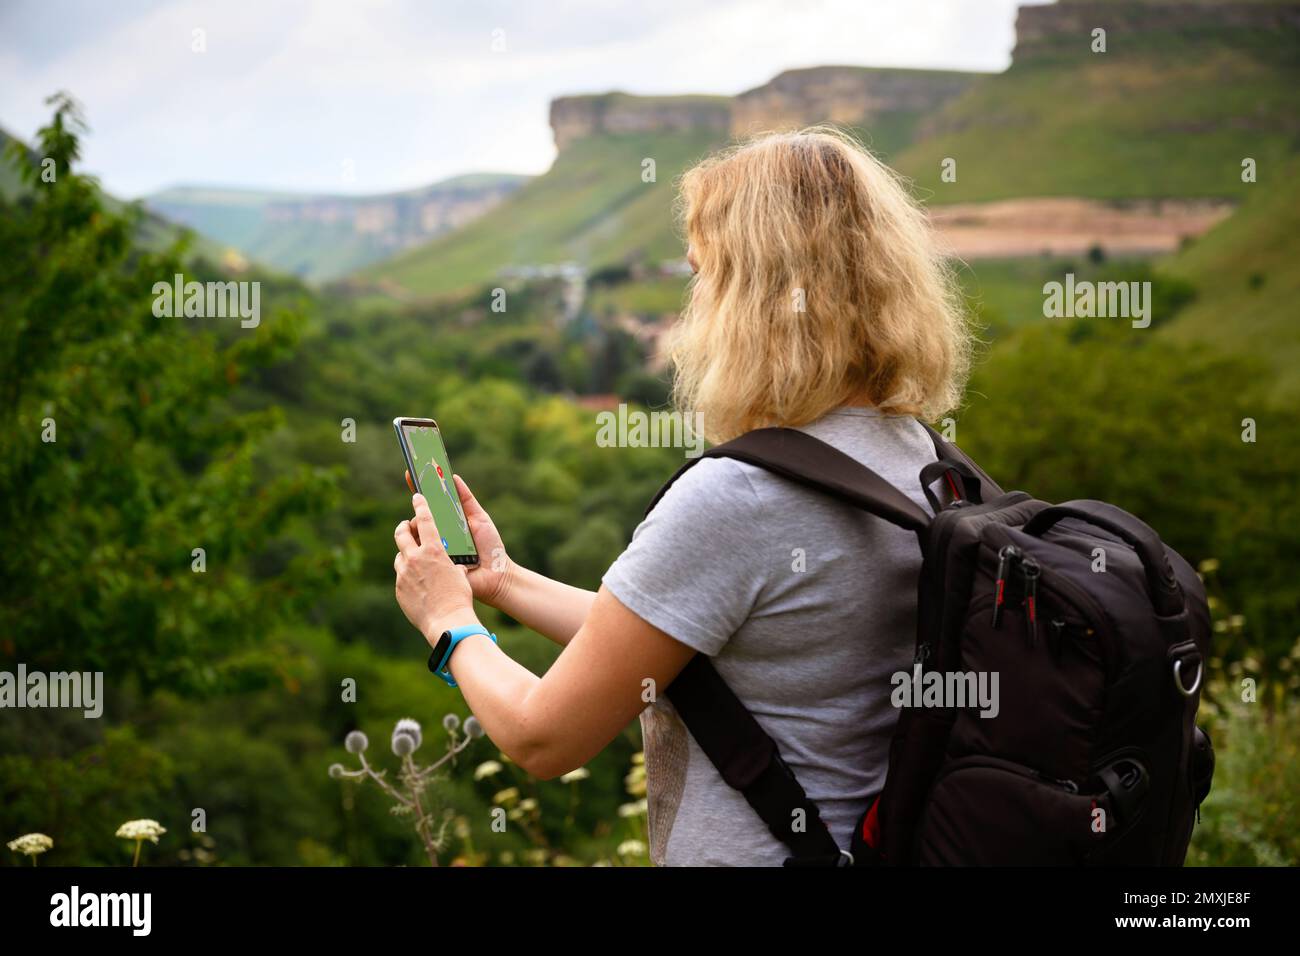 Femme randonneur utilise l'application de navigateur gps dans smartphone marchant en montagne, personne touriste regarde le téléphone mobile pour la navigation. Concept de randonnée, nature, j Banque D'Images